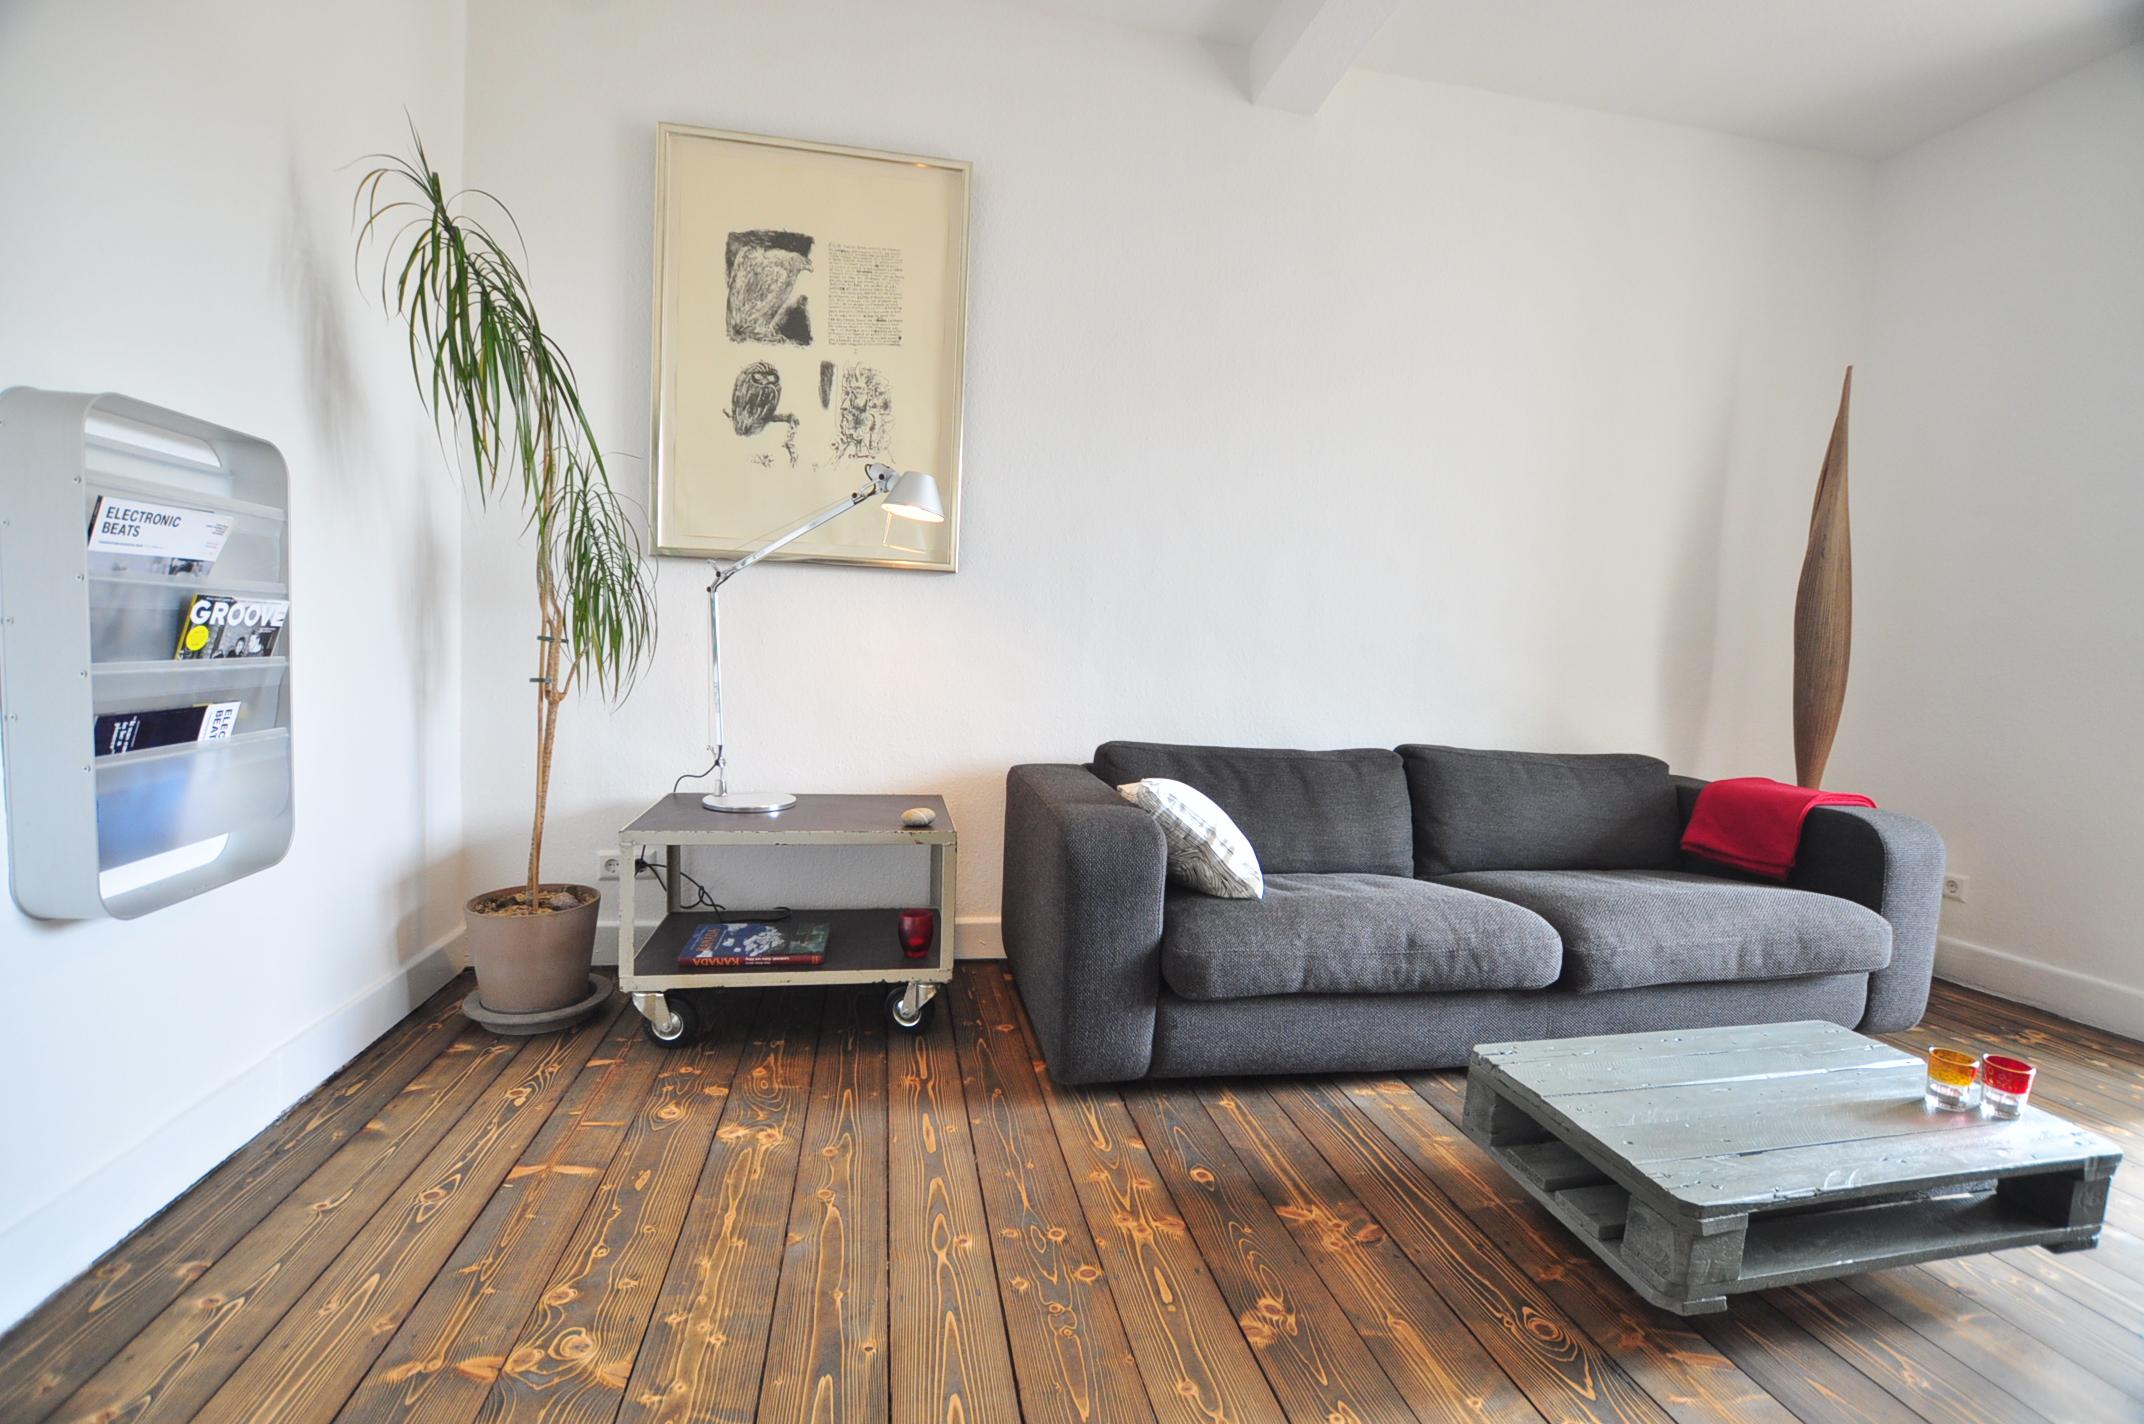 Wohnzimmer_ möblierte Wohnung #couchtisch #bodenbelag #palettentisch #palettenmöbel ©e-rent Agentur / Alina Edelstein